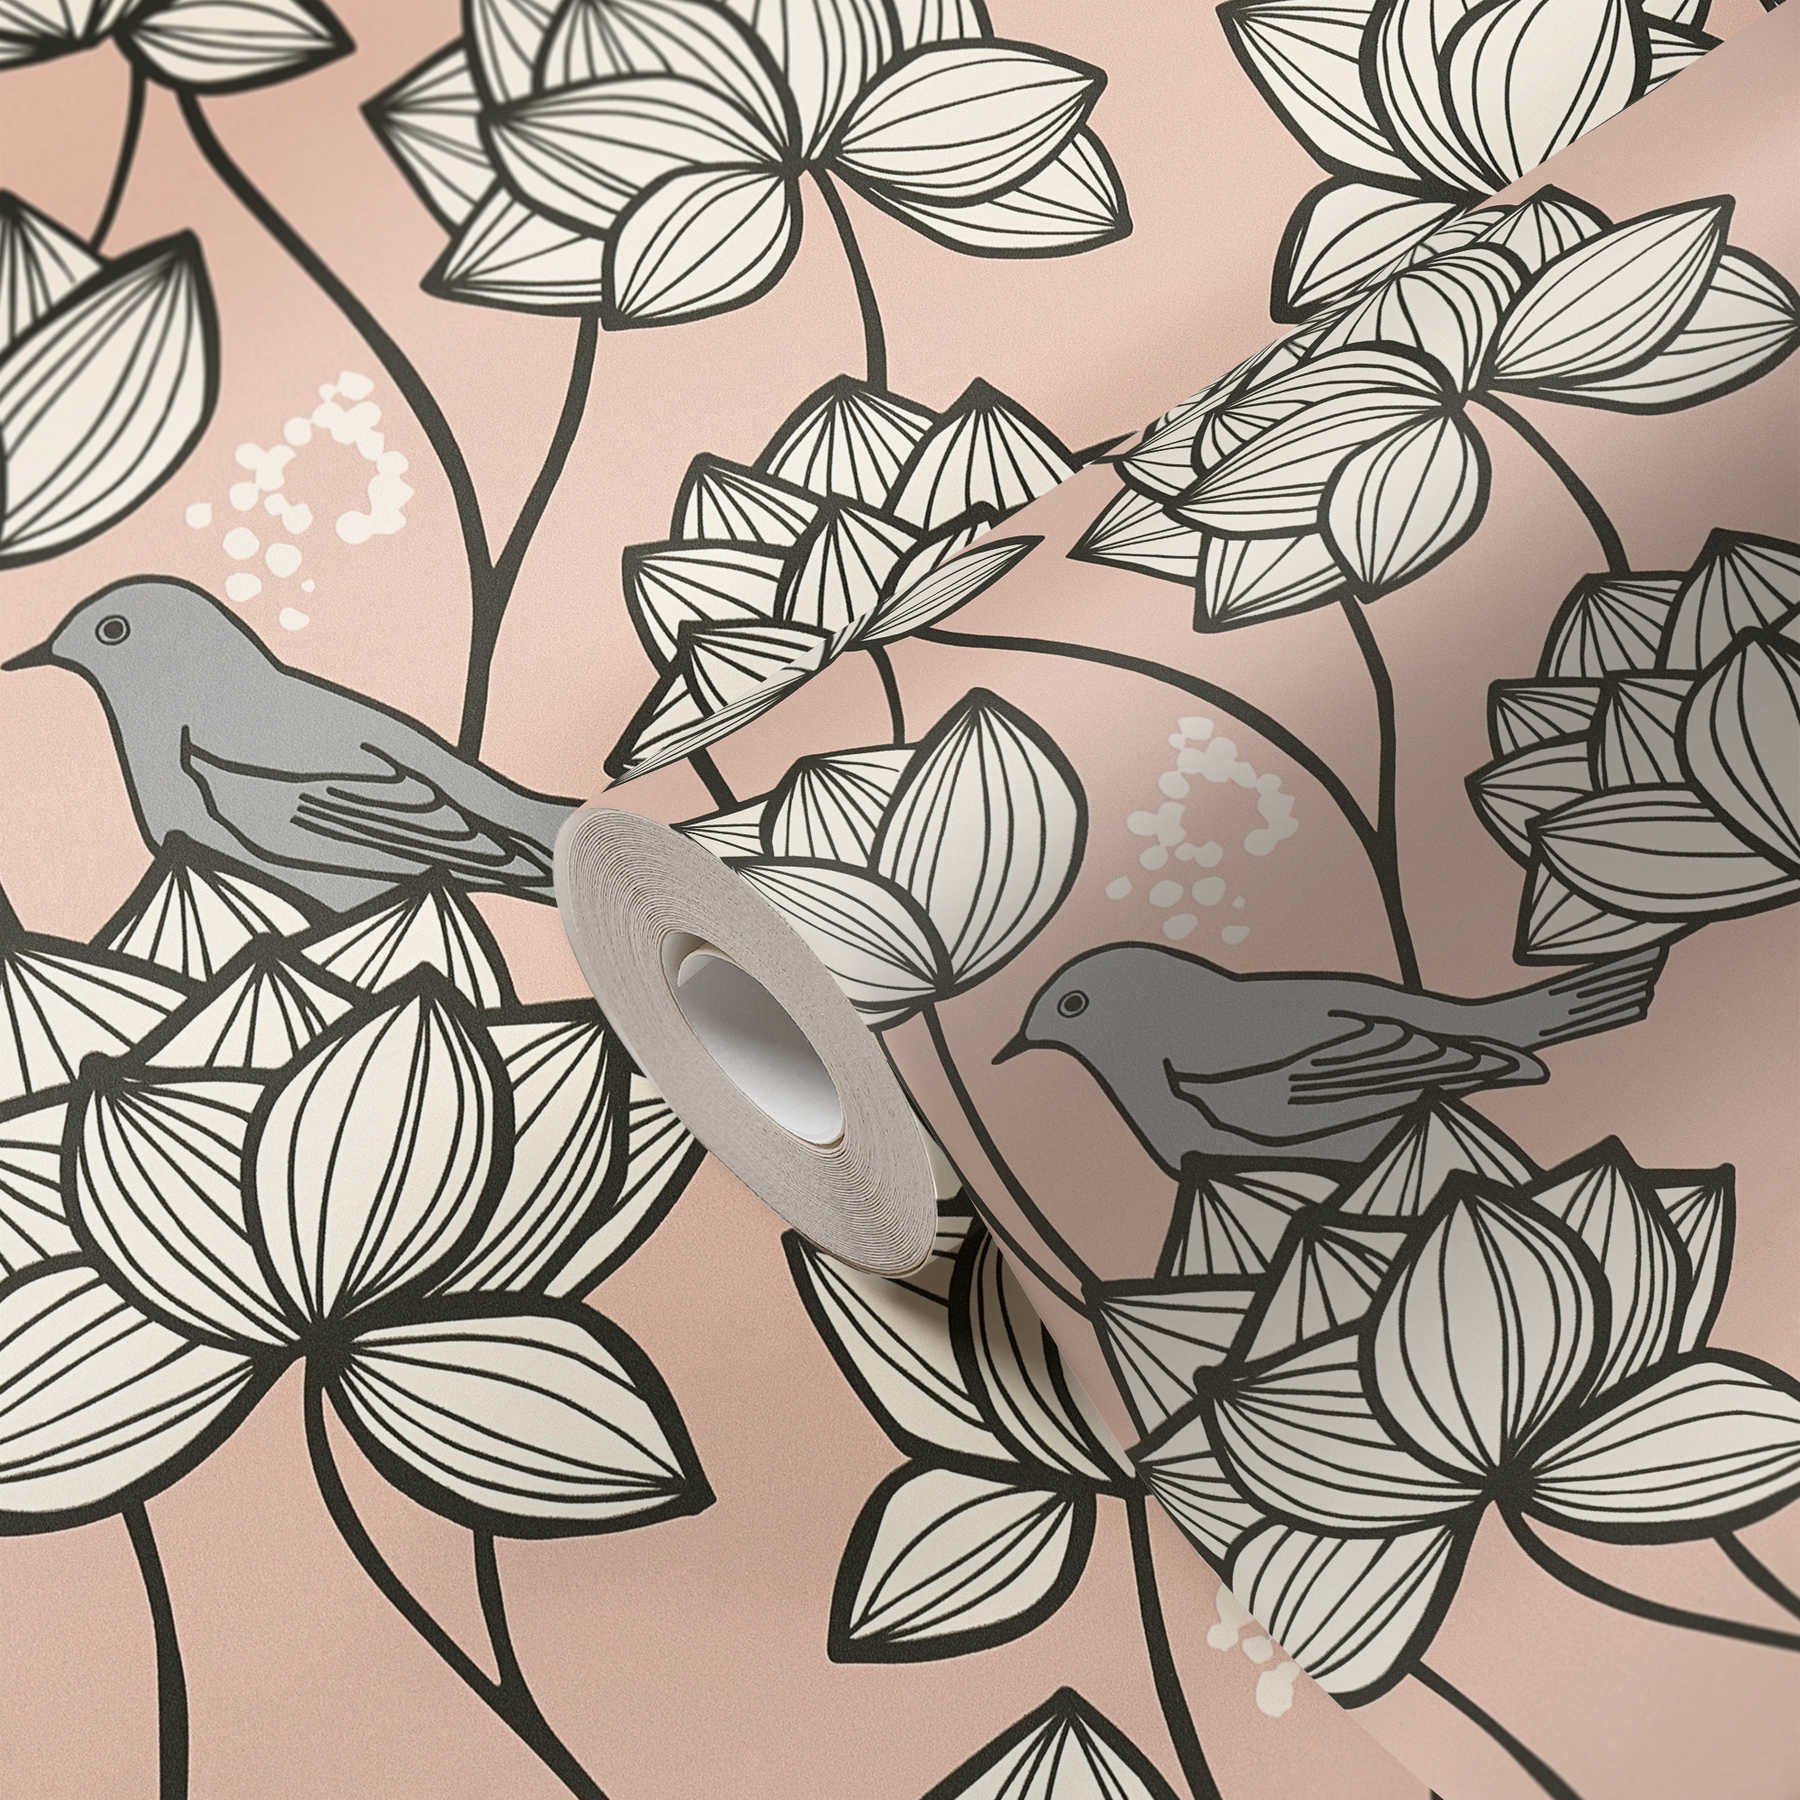             Carta da parati in tessuto non tessuto con fiori e uccelli in stile line art - grigio, rosa
        